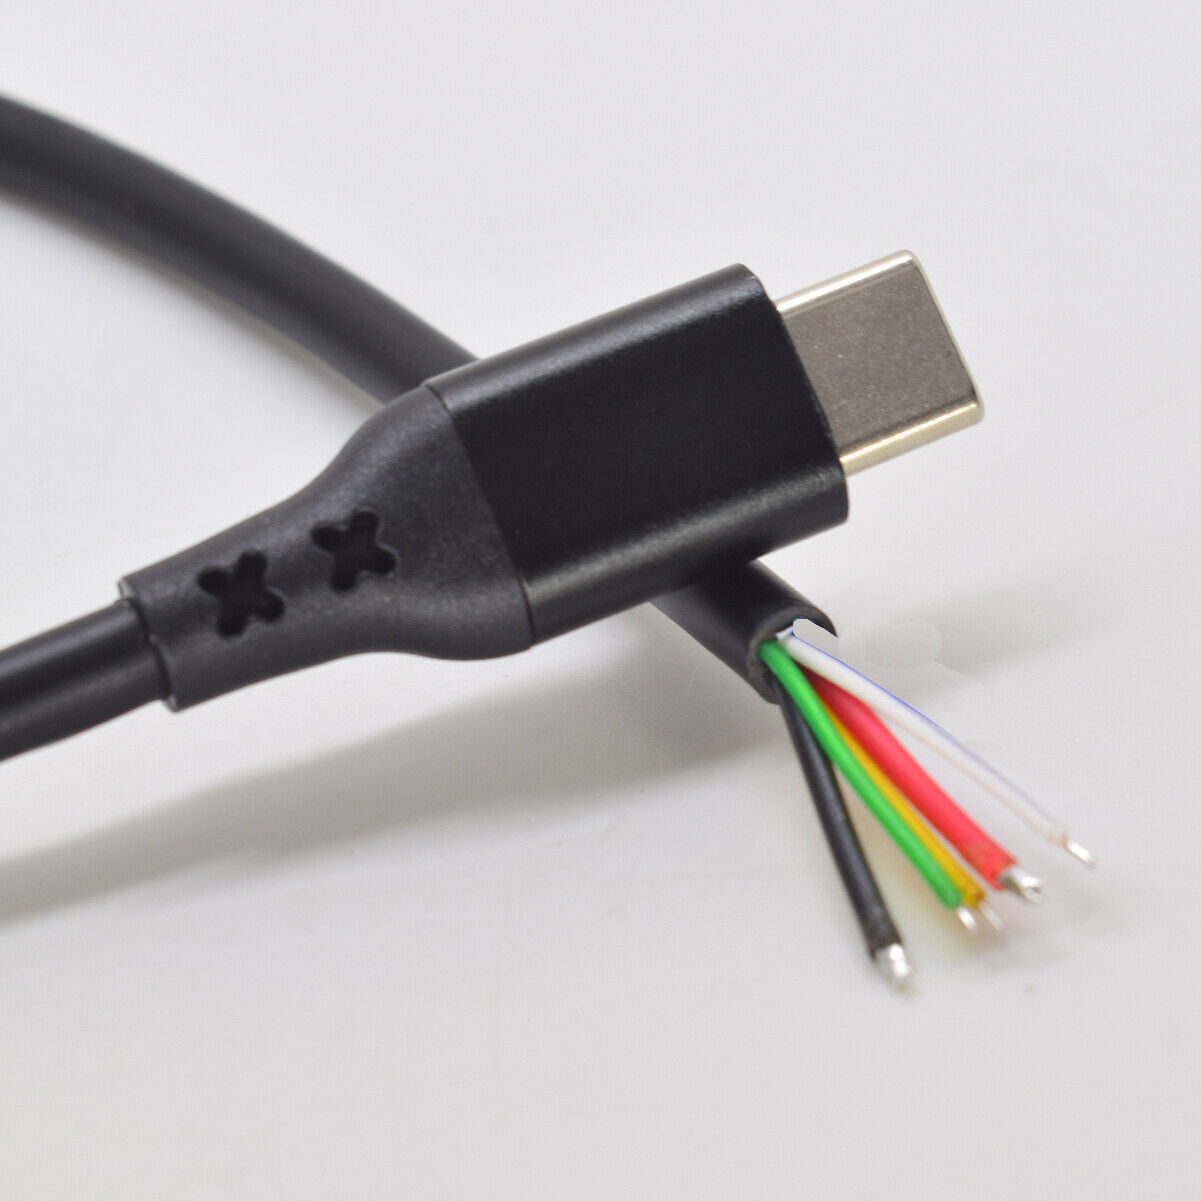 USB-C Buchse 2 pol. 7,5 cm Kabel Flansch